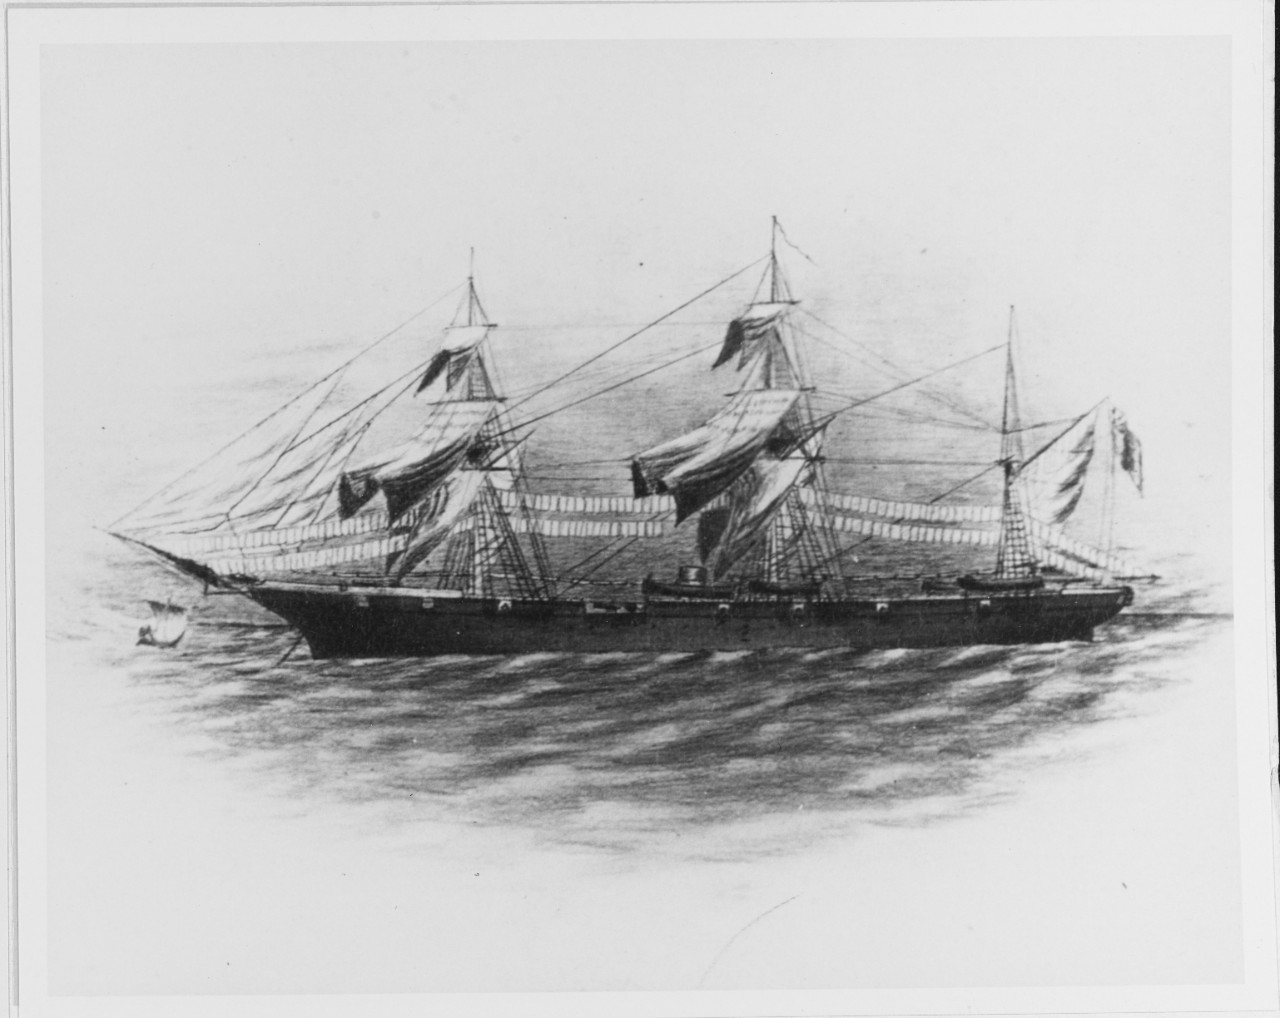 USS ONEIDA (1862-1870)